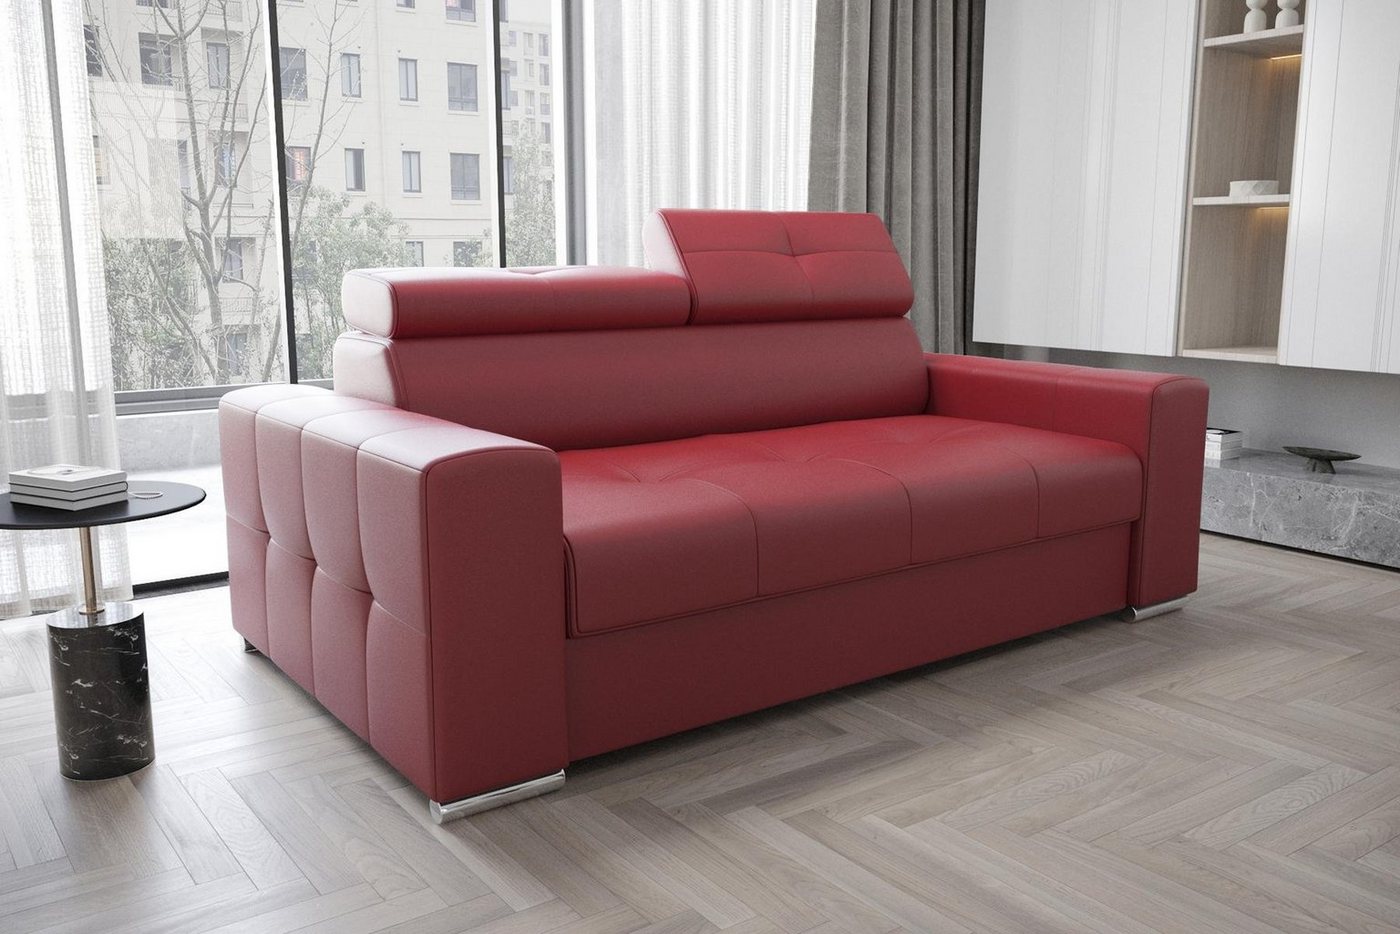 JVmoebel Sofa Designer Zweisitzer Couch Polster Textil Leder Sofa Design 2 Sitzer, Made in Europe von JVmoebel